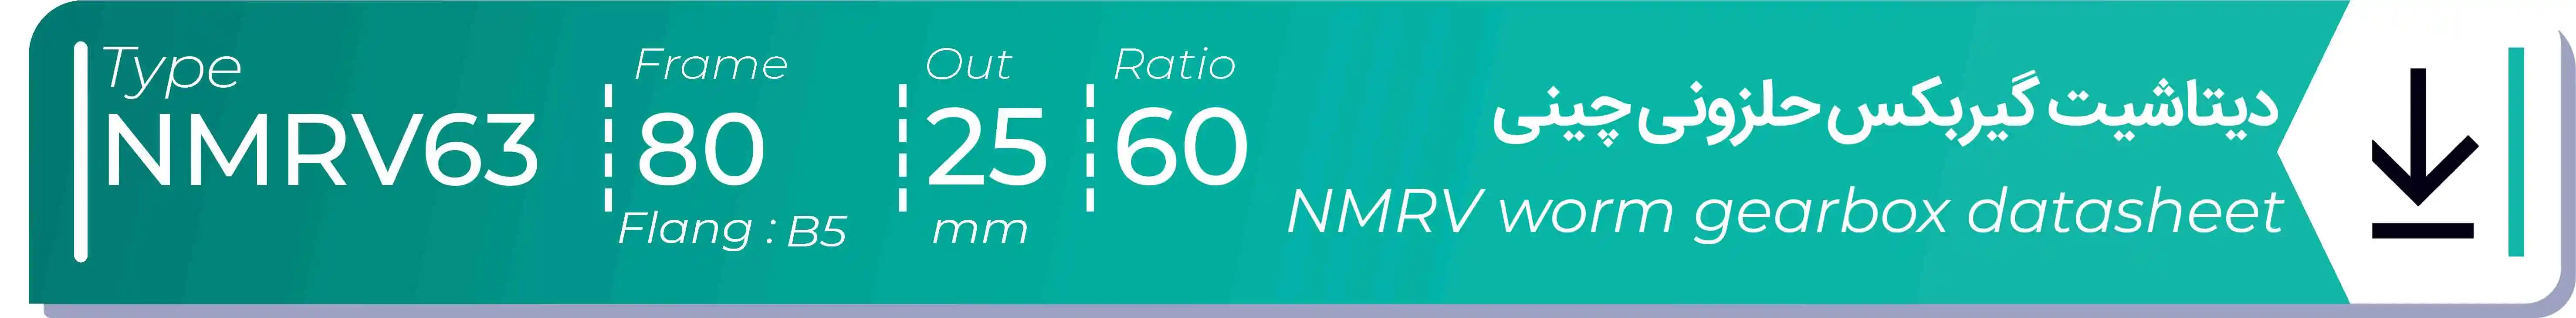  دیتاشیت و مشخصات فنی گیربکس حلزونی چینی   NMRV63  -  با خروجی 25- میلی متر و نسبت60 و فریم 80